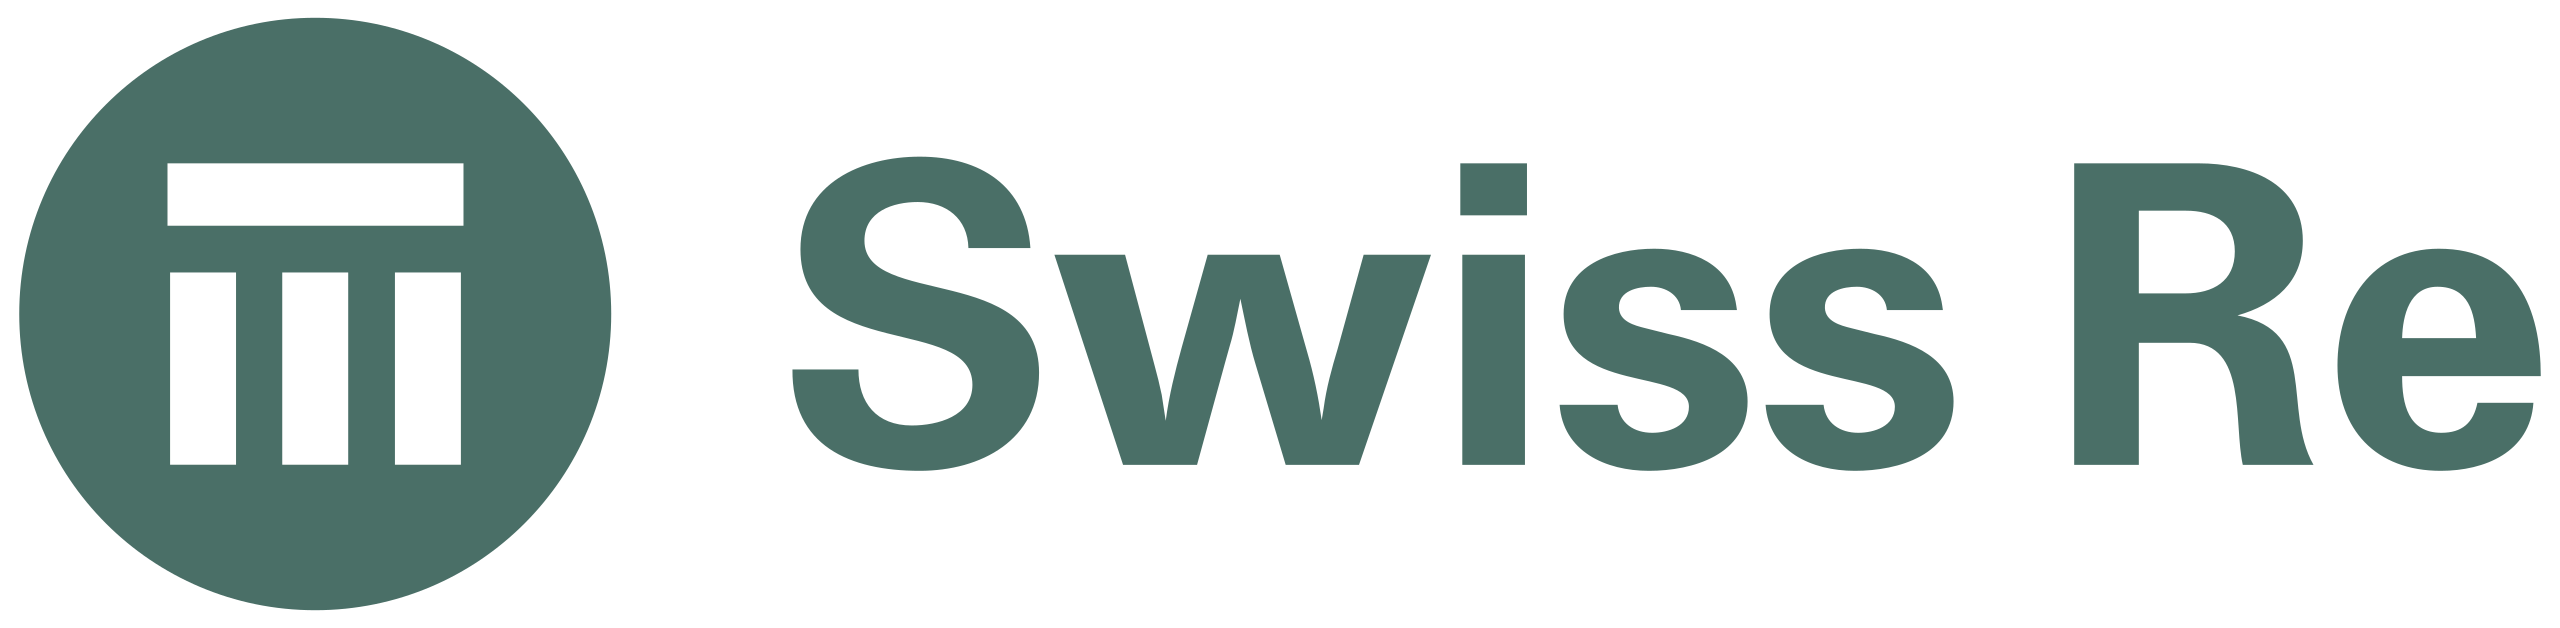 logo-swiss-re-2018-11